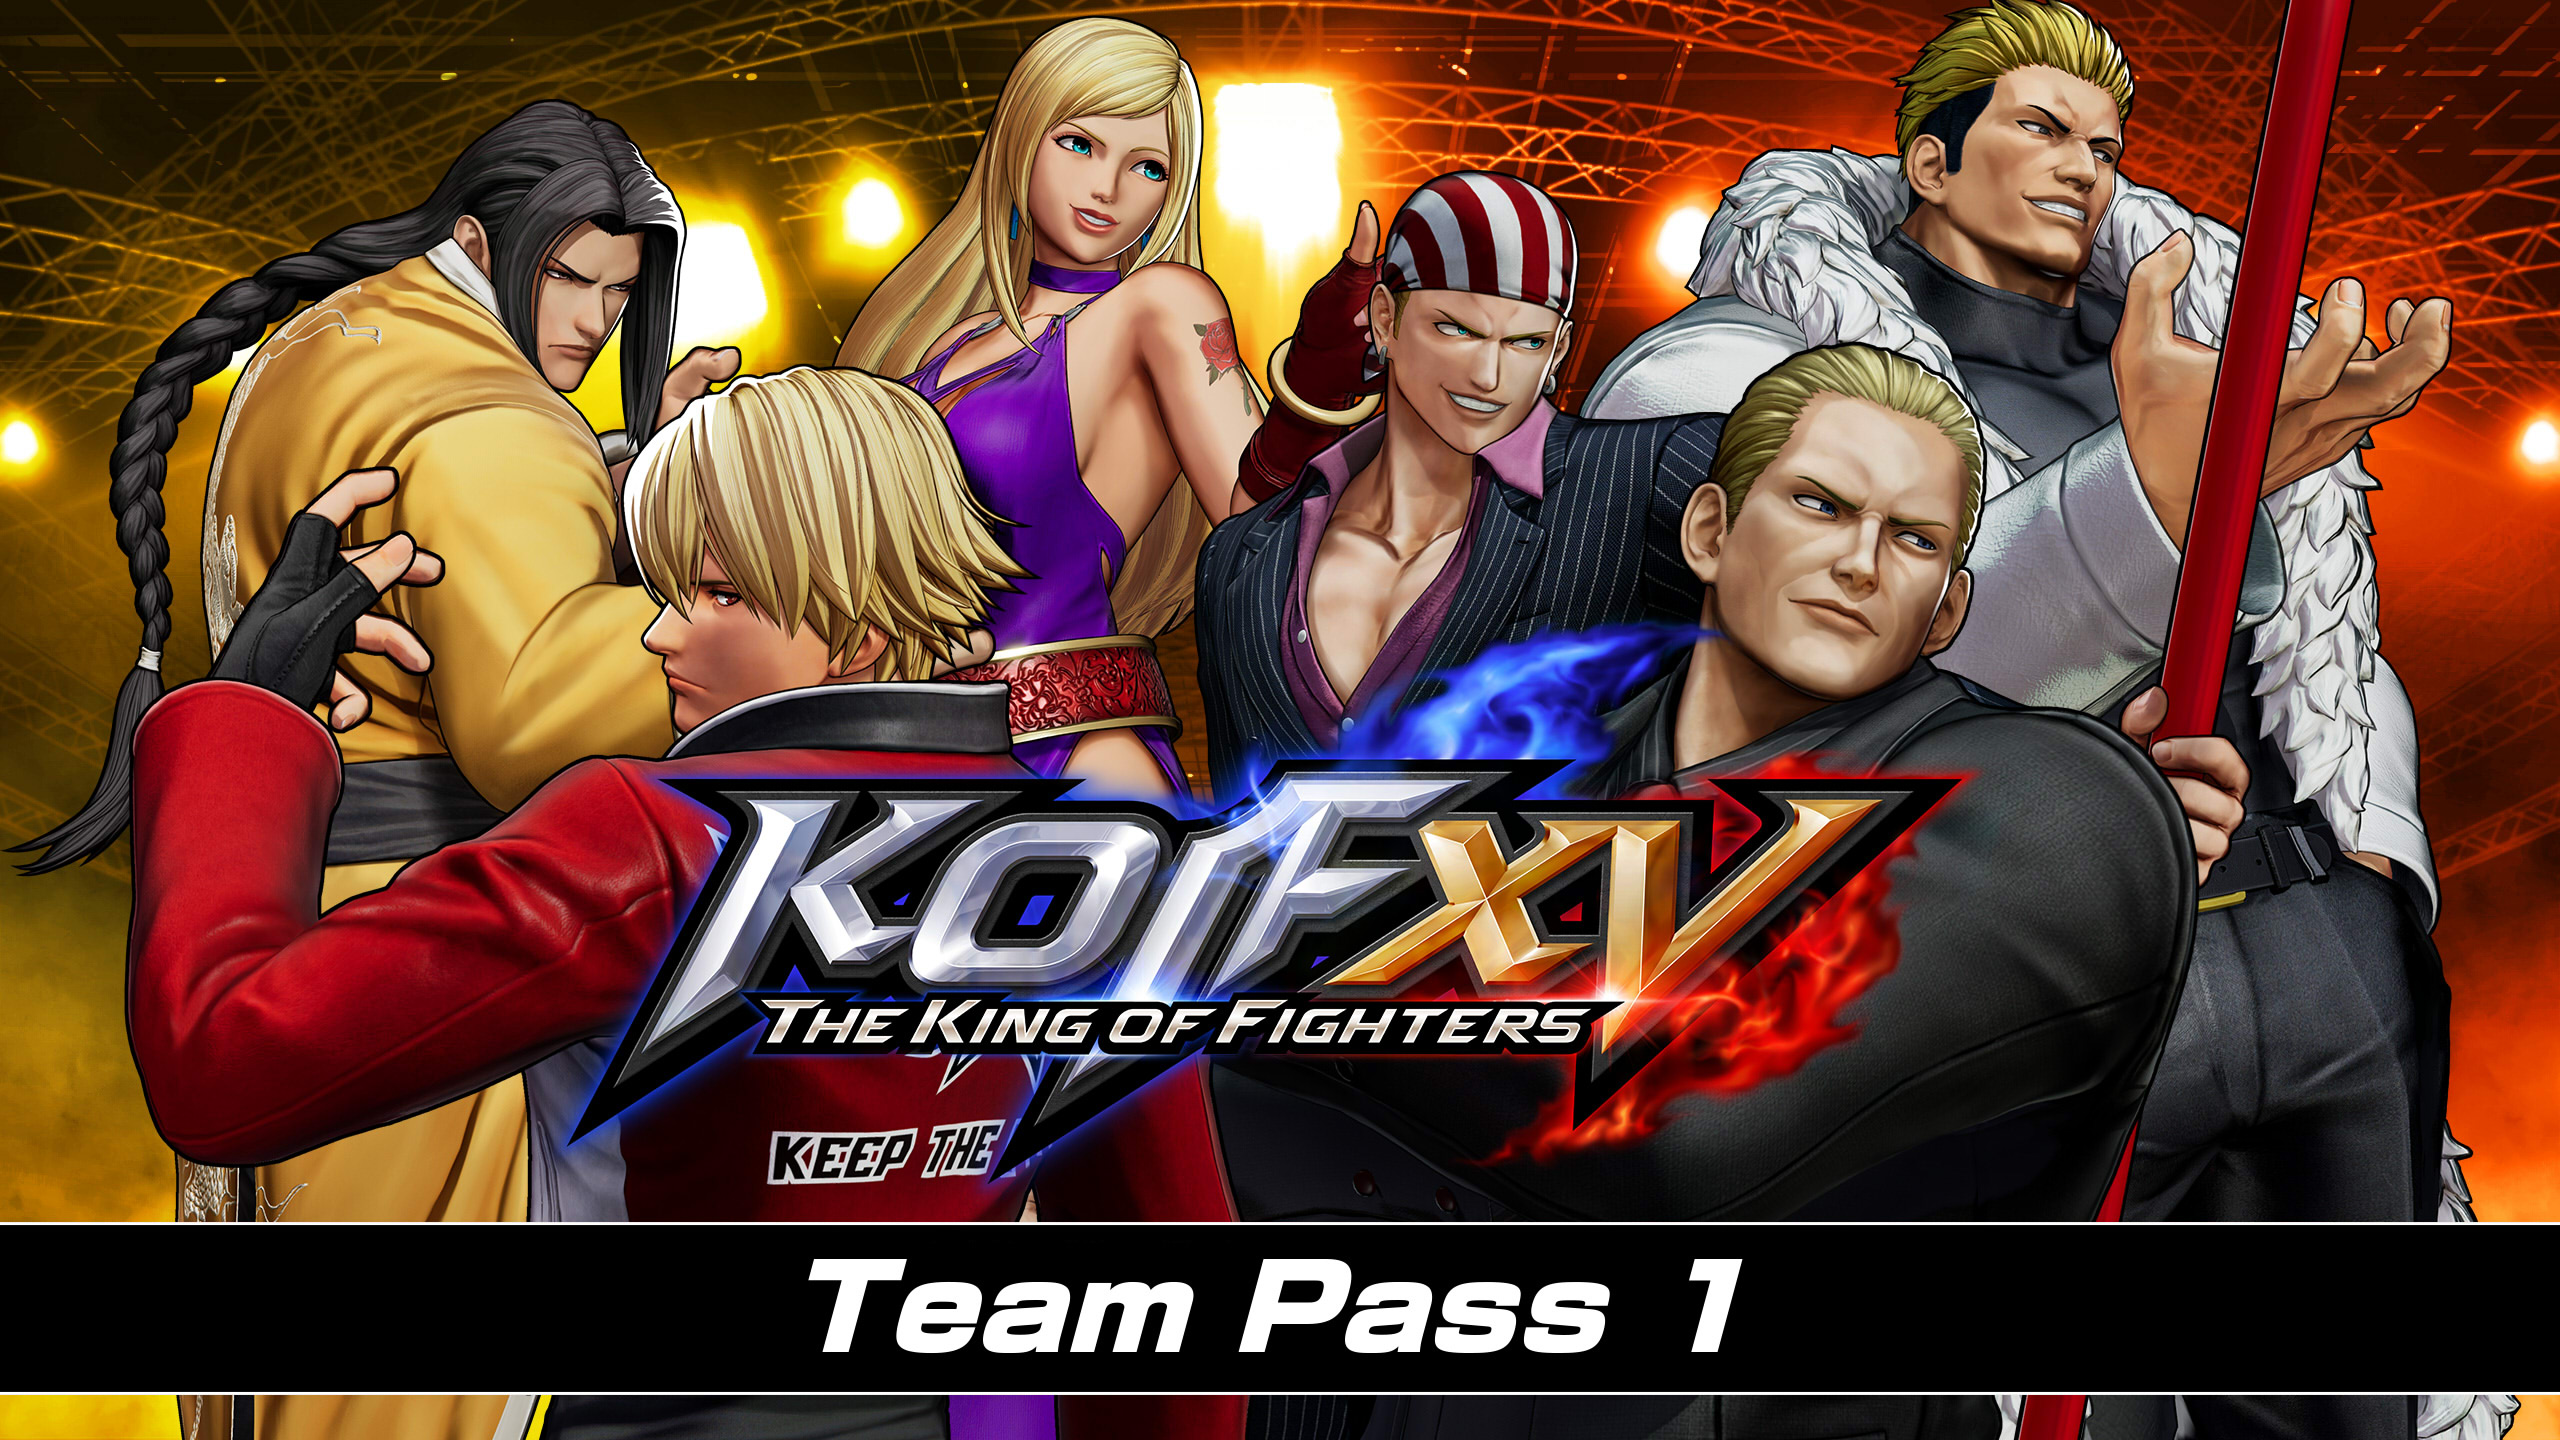 THE KING OF FIGHTERS XV - Team Pass 1 DLC EU PS4 CD Key (25.98$)